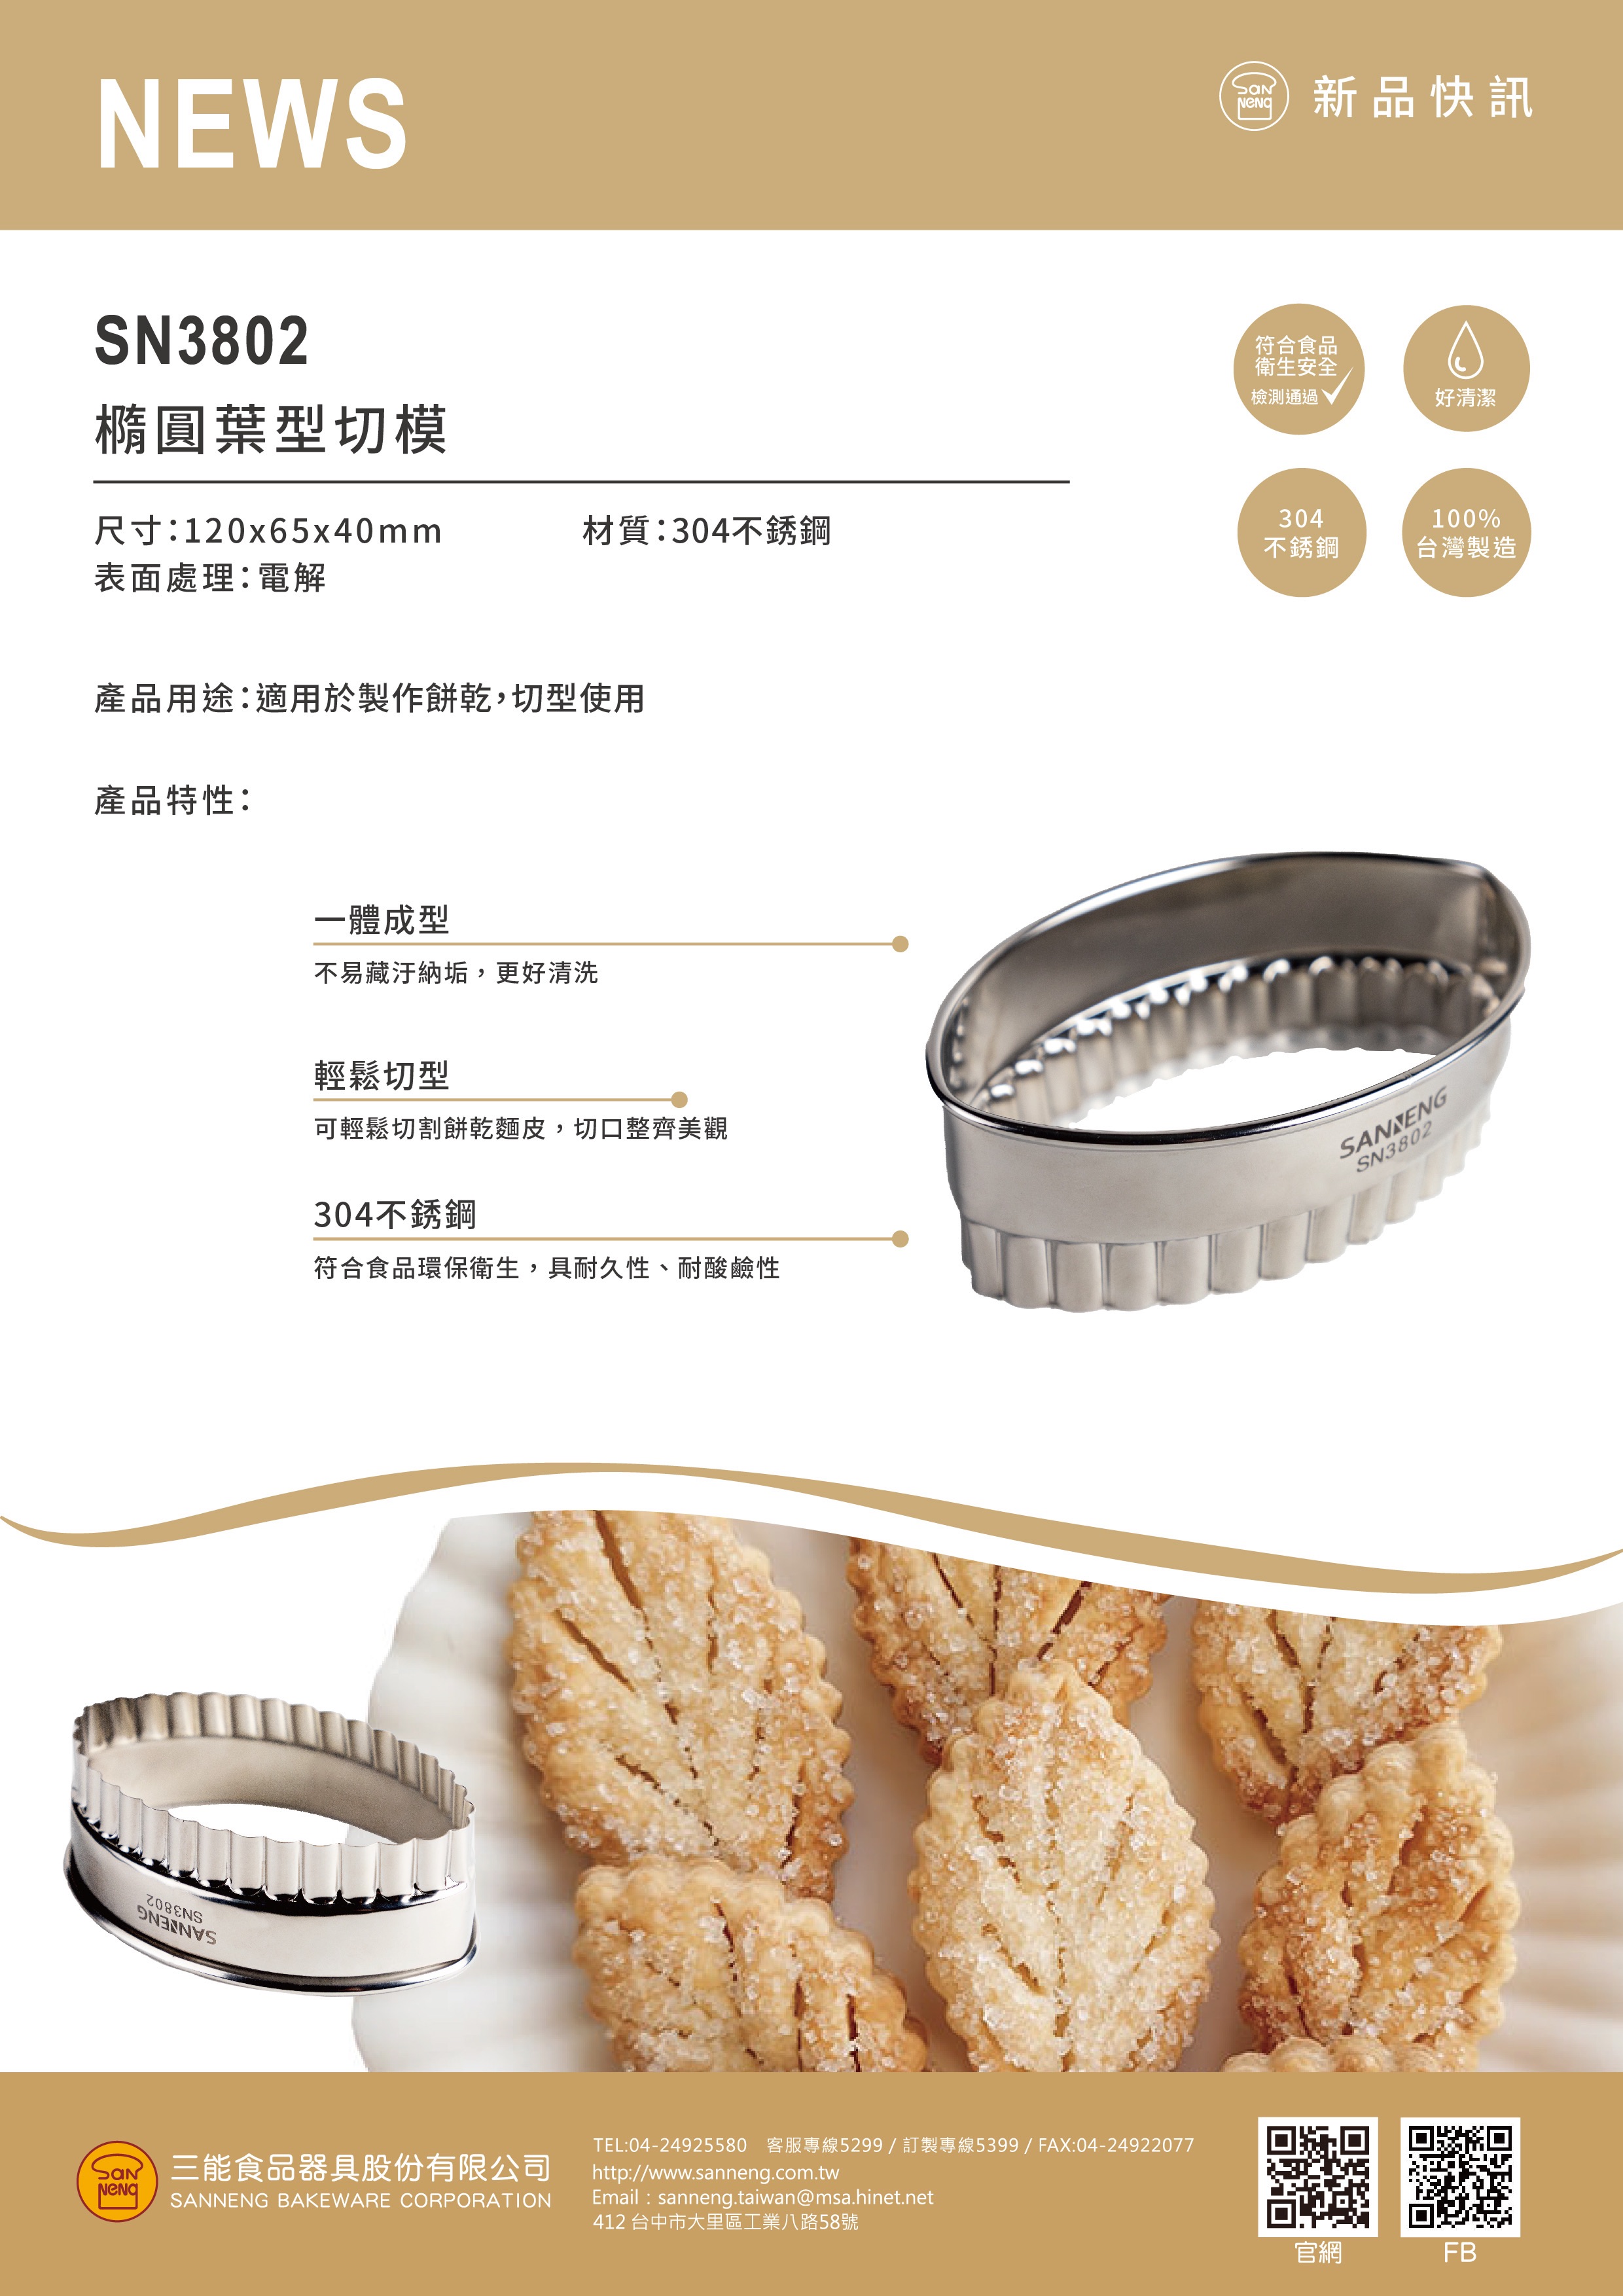 专业西餐烘焙原材料供应商-深圳市兴南亚食品有限公司 - 知乎